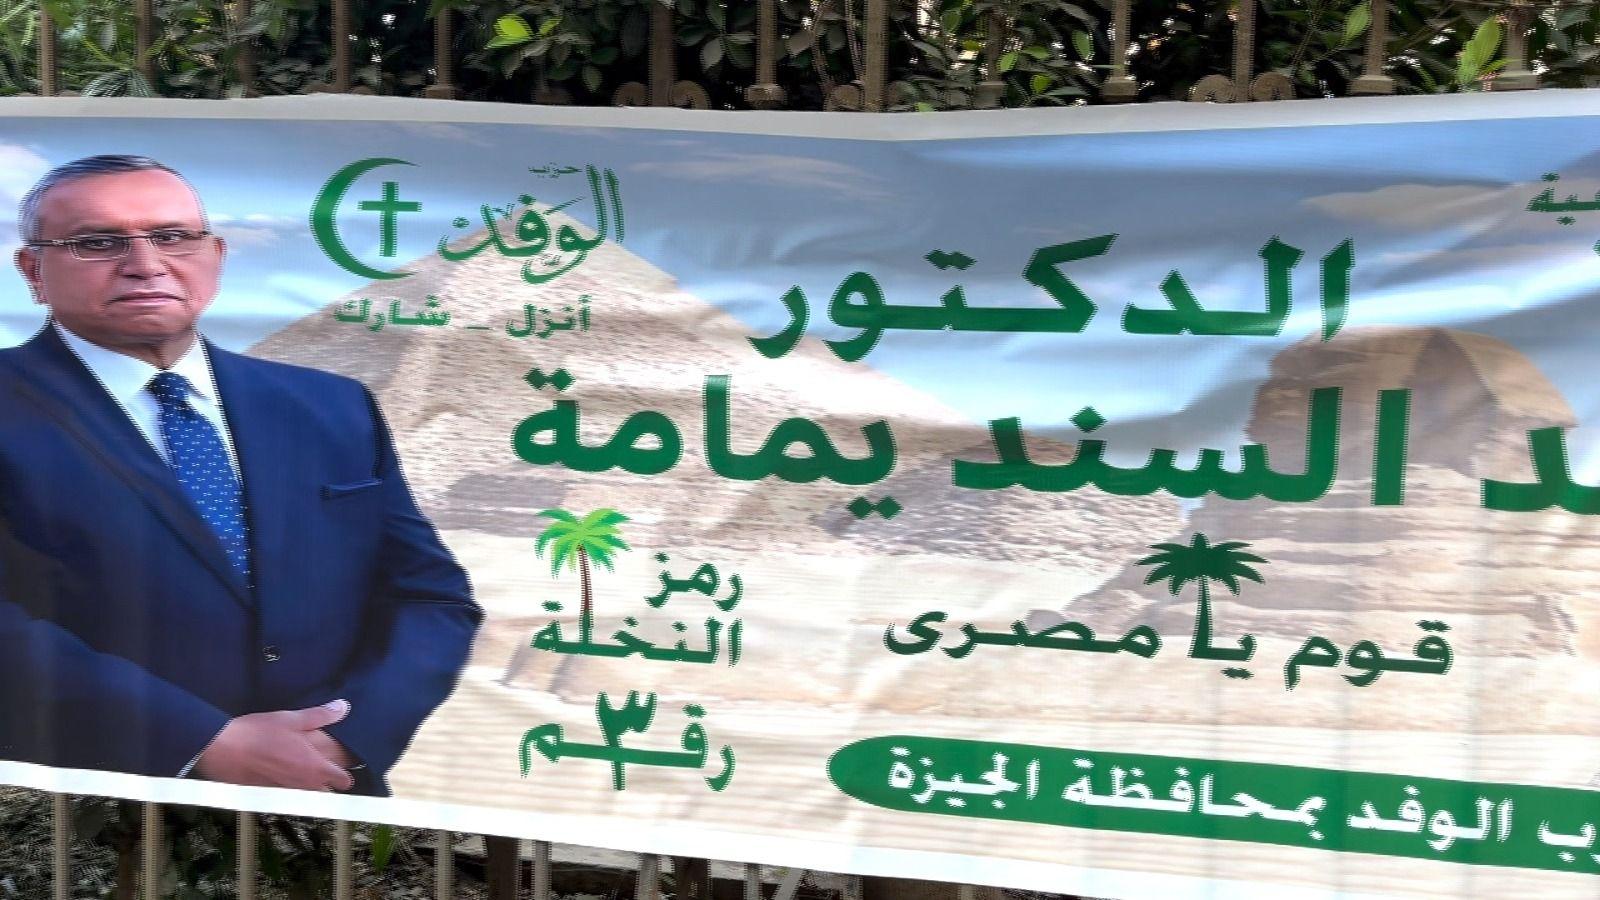 ملصق لسند يمامة أحد مرشحي الانتخابات الرئاسية المصرية